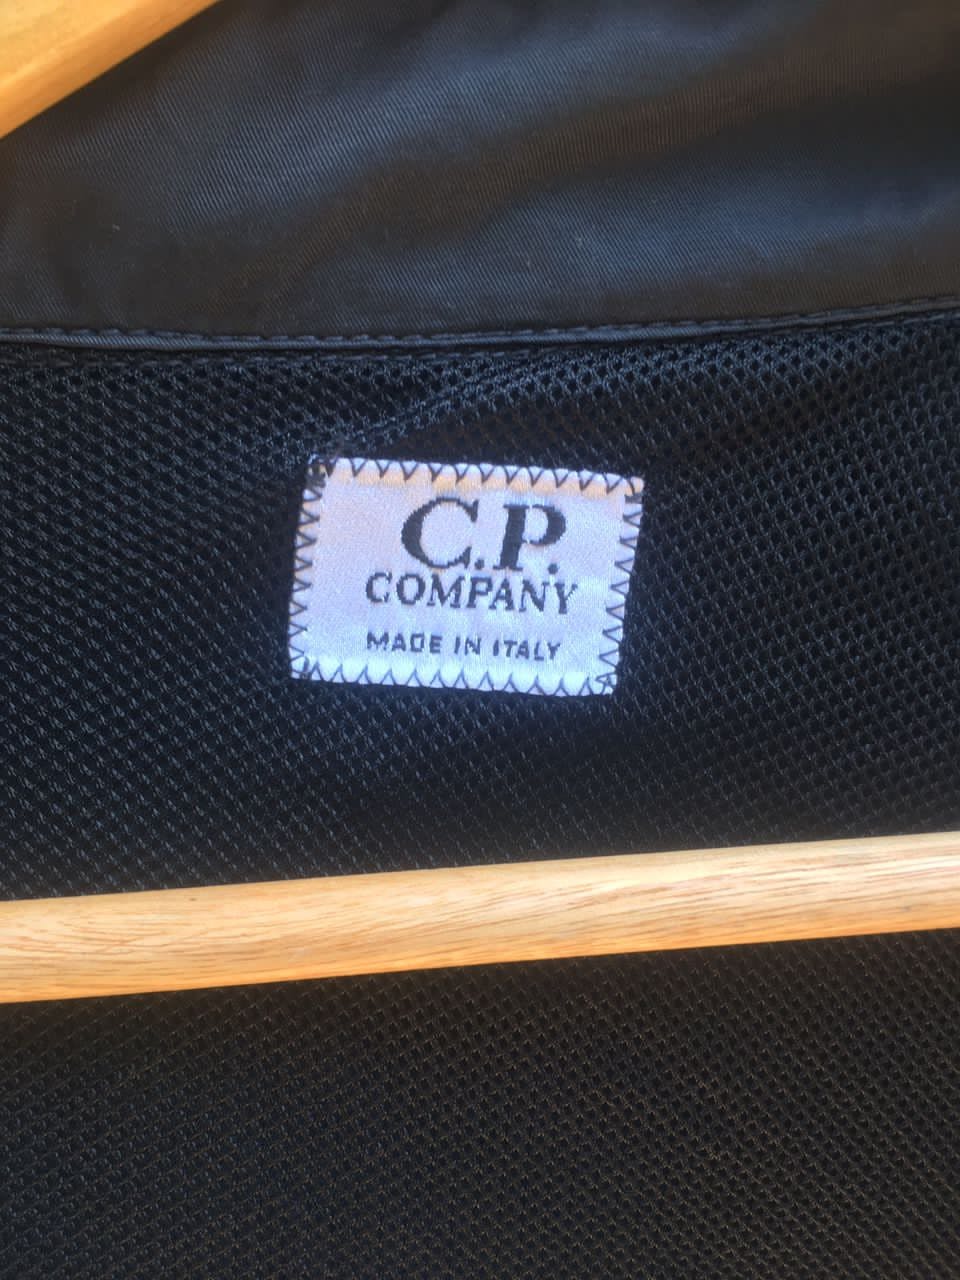 C.P Company oversized Nylon black long Jackets made in italy - 4